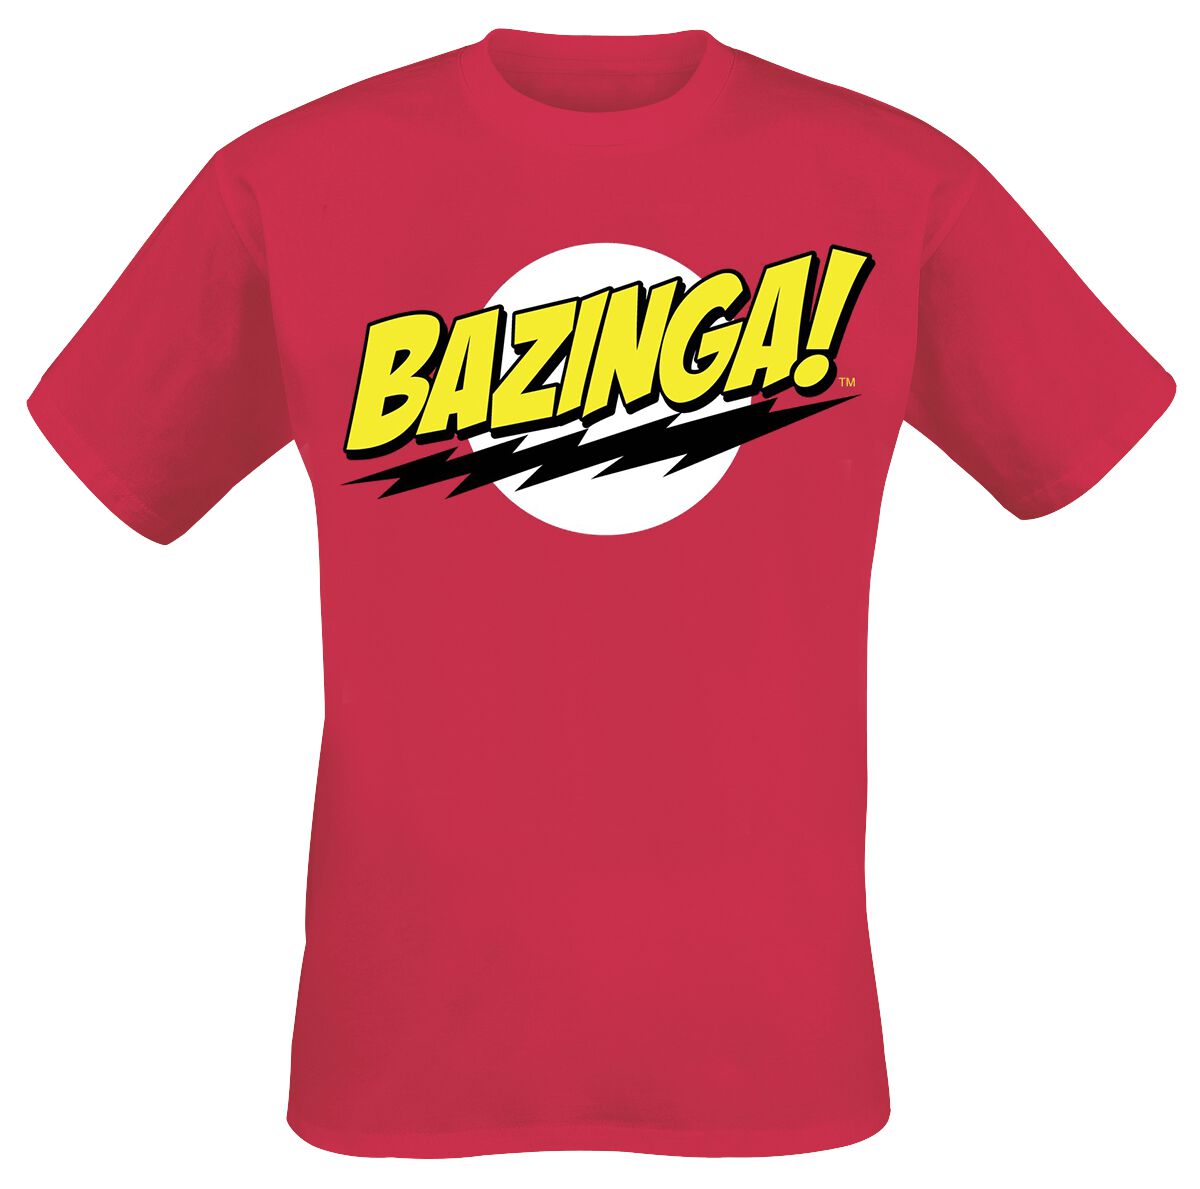 The Big Bang Theory Bazinga T-Shirt red